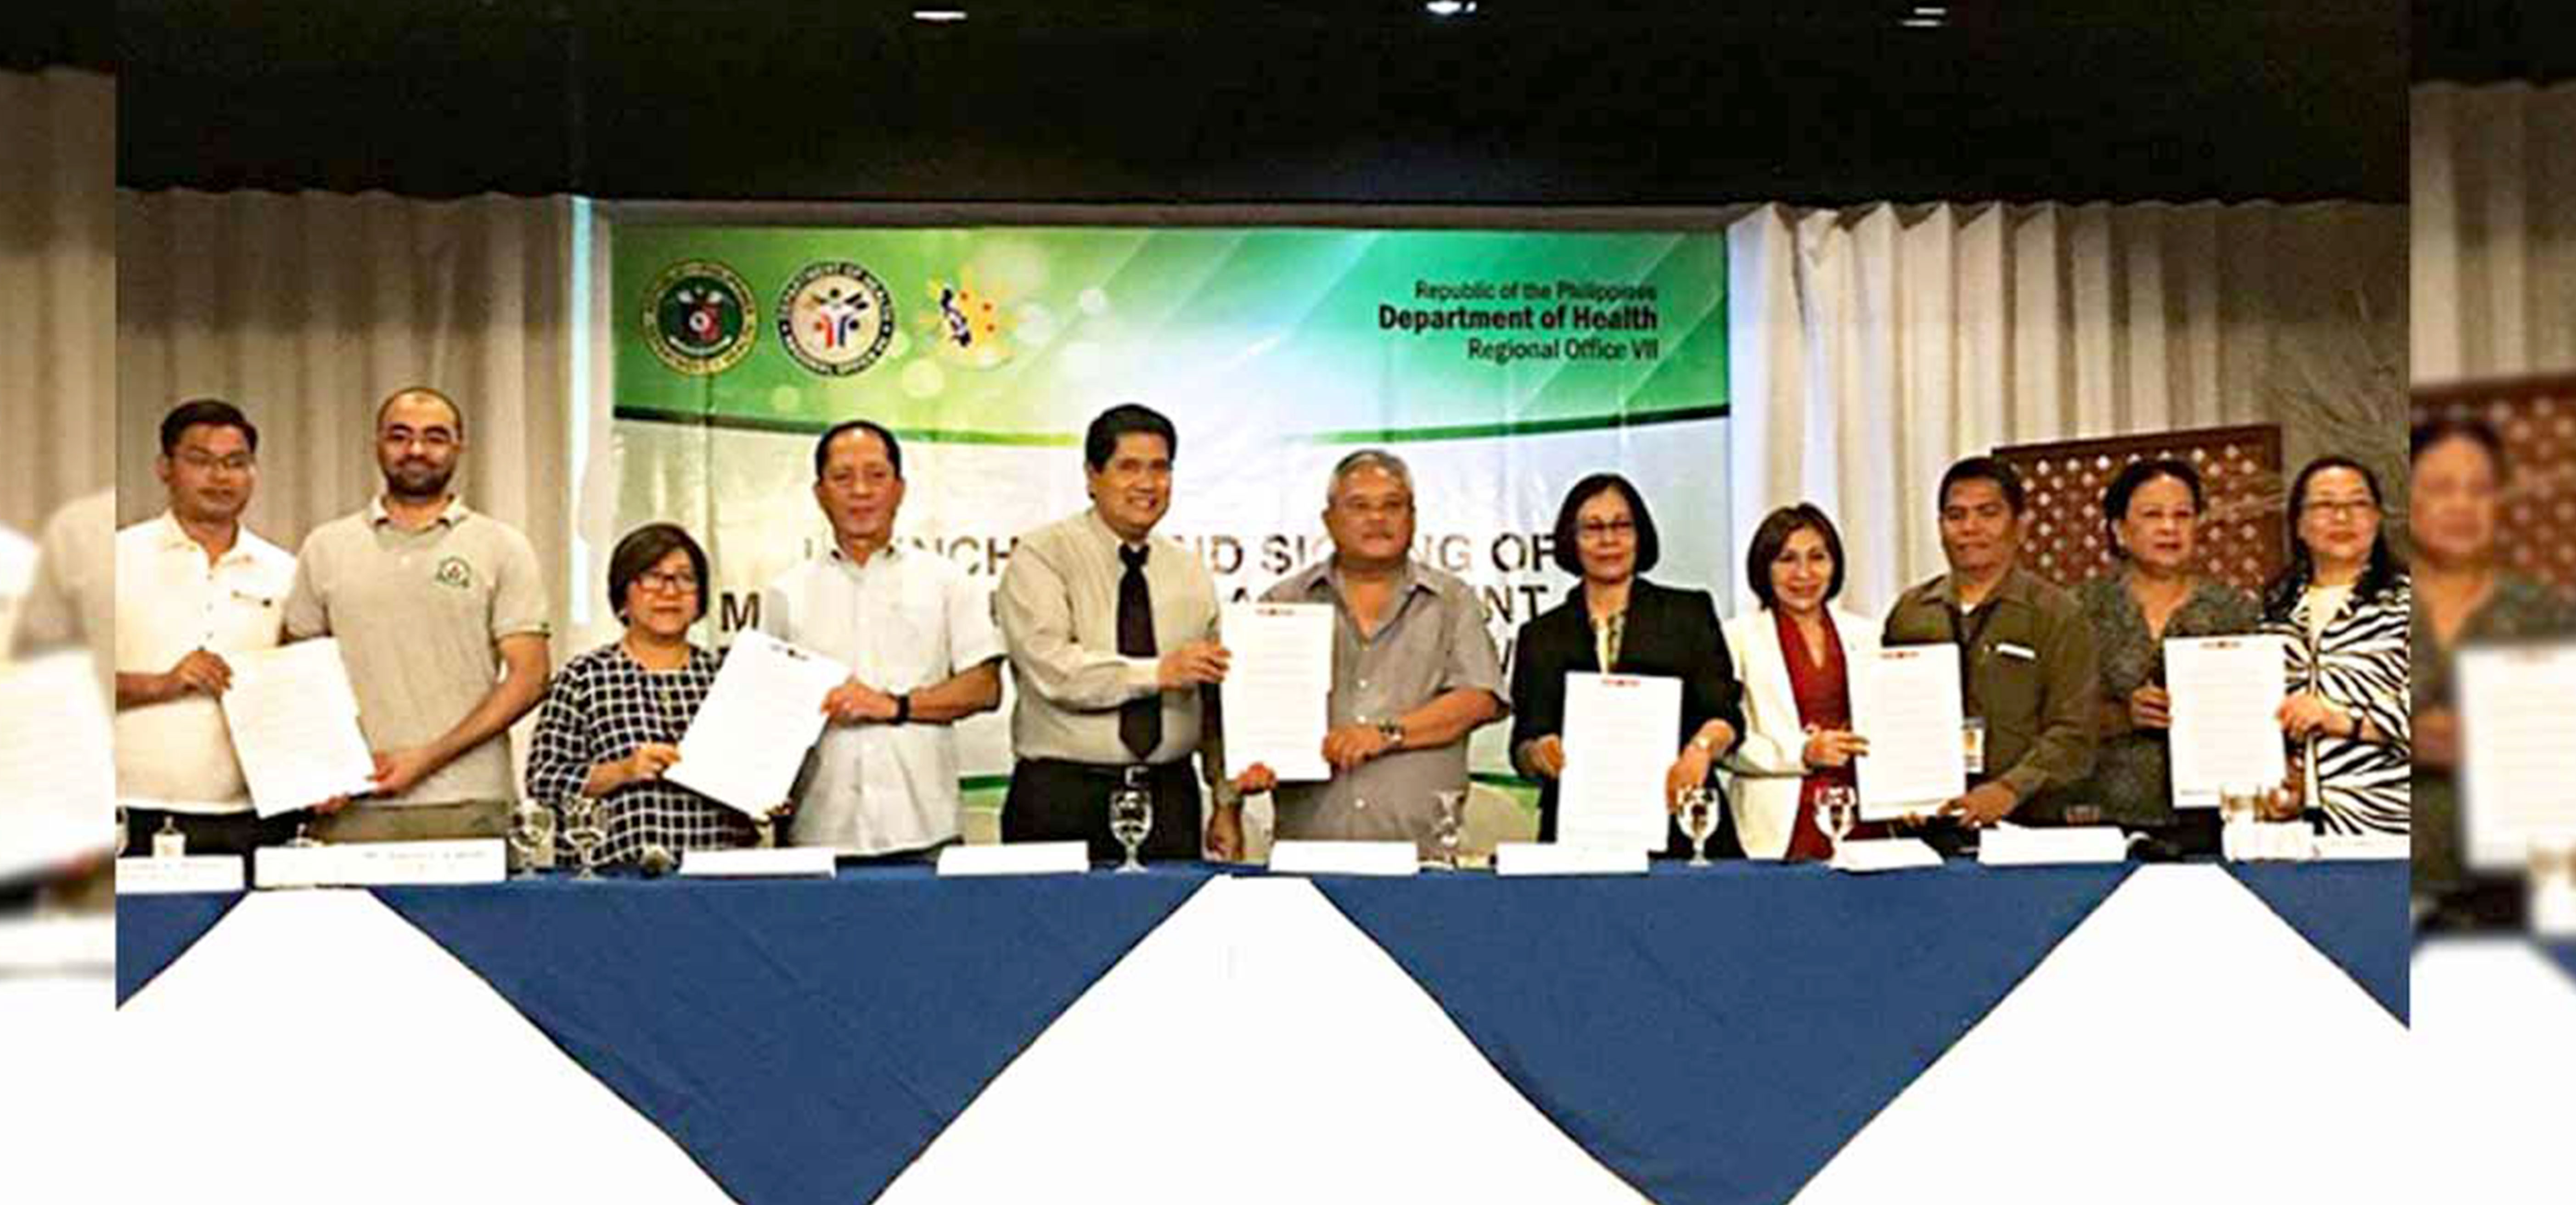 MOA Signing with Cebu DOH Region VII